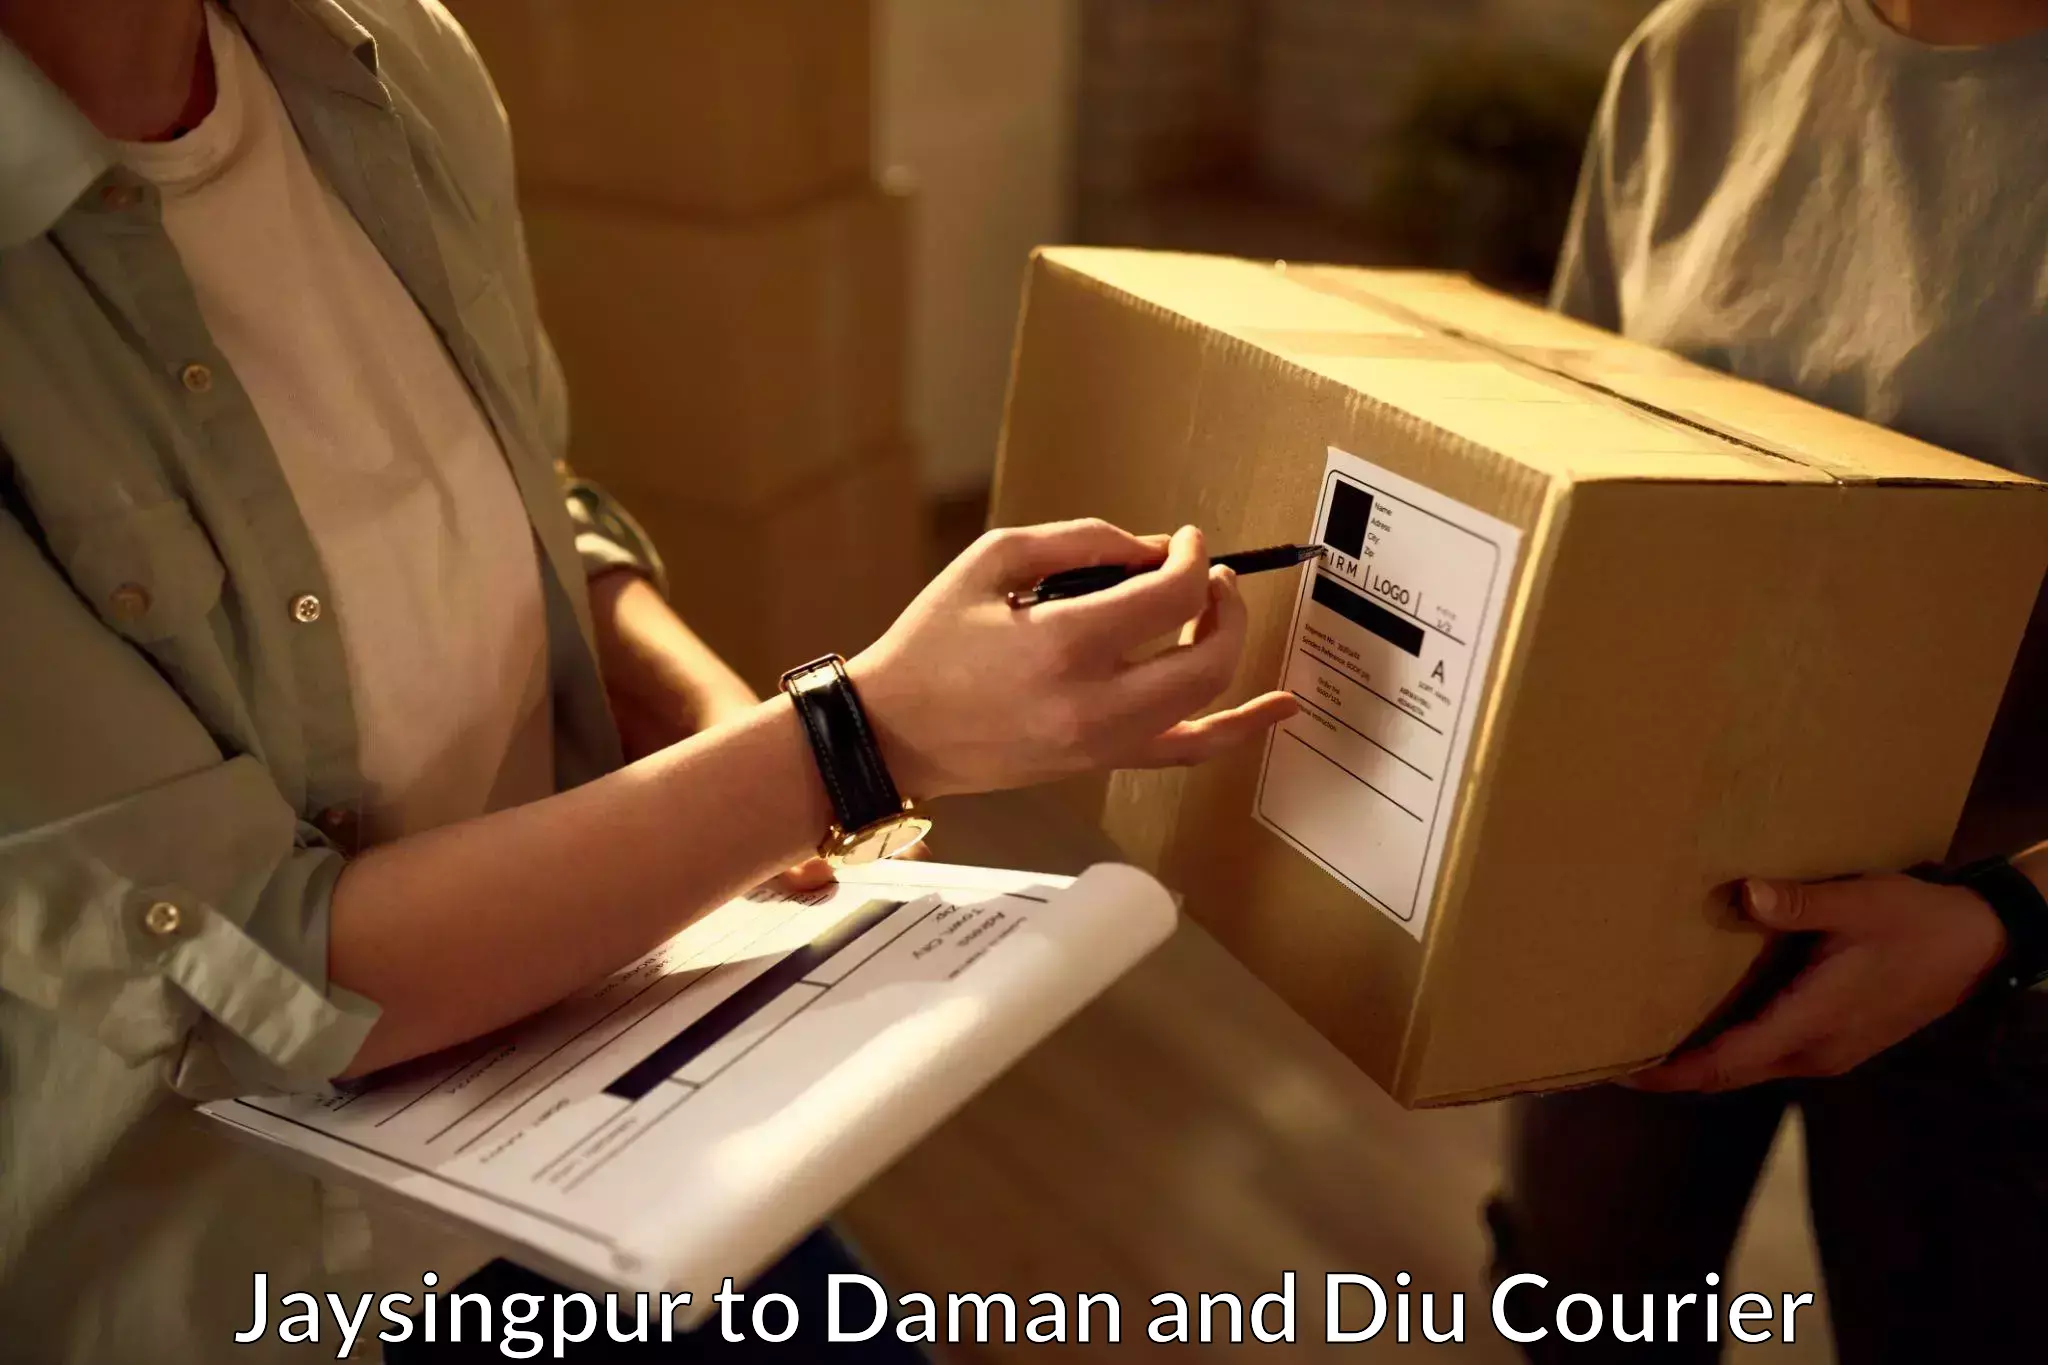 Express logistics service Jaysingpur to Daman